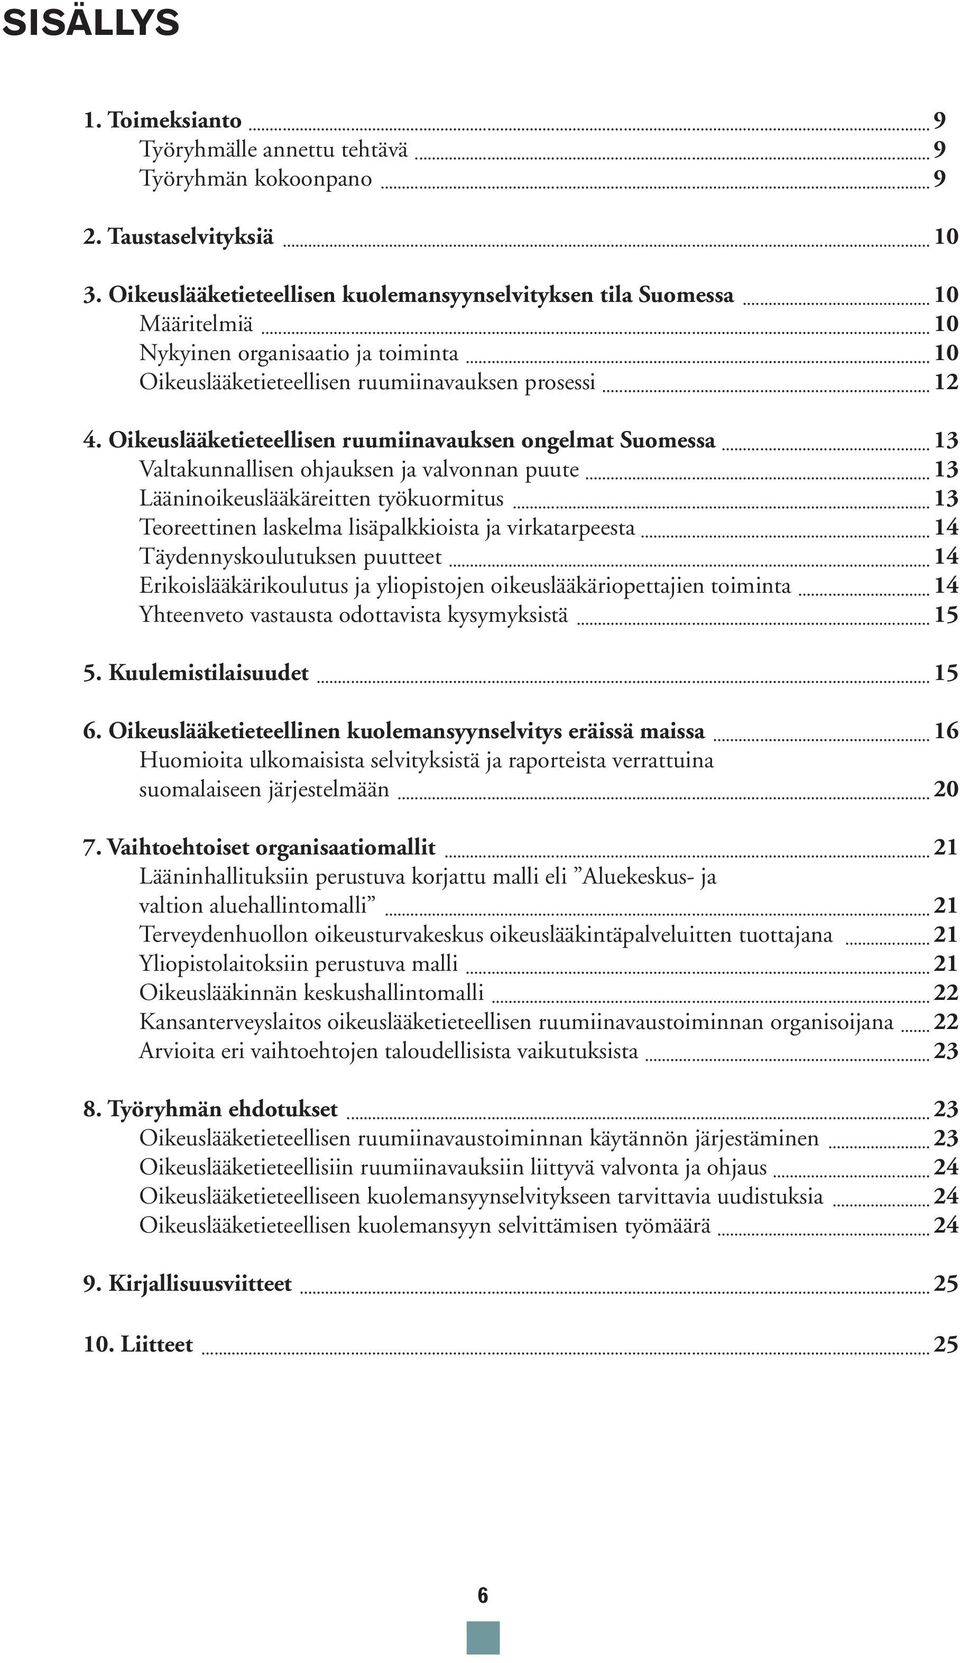 Oikeuslääketieteellisen ruumiinavauksen ongelmat Suomessa 13 Valtakunnallisen ohjauksen ja valvonnan puute 13 Lääninoikeuslääkäreitten työkuormitus 13 Teoreettinen laskelma lisäpalkkioista ja